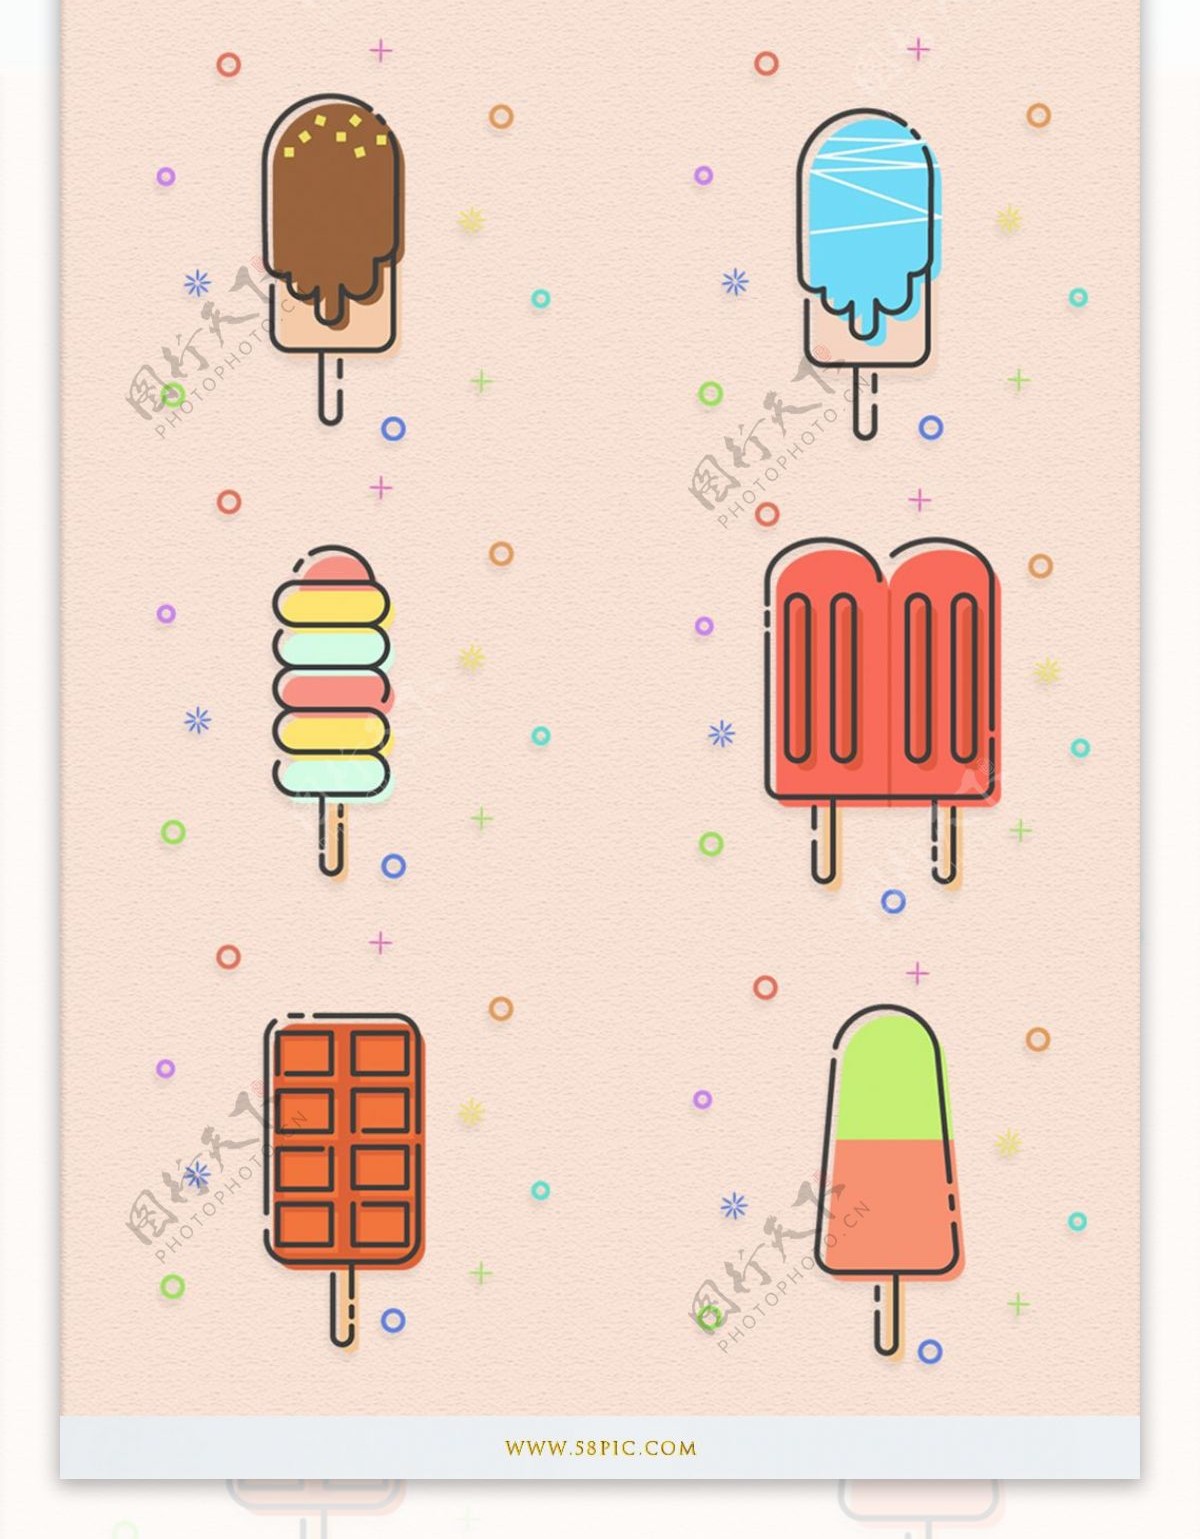 MEB卡通美食冰棍冰淇淋图标素材矢量元素